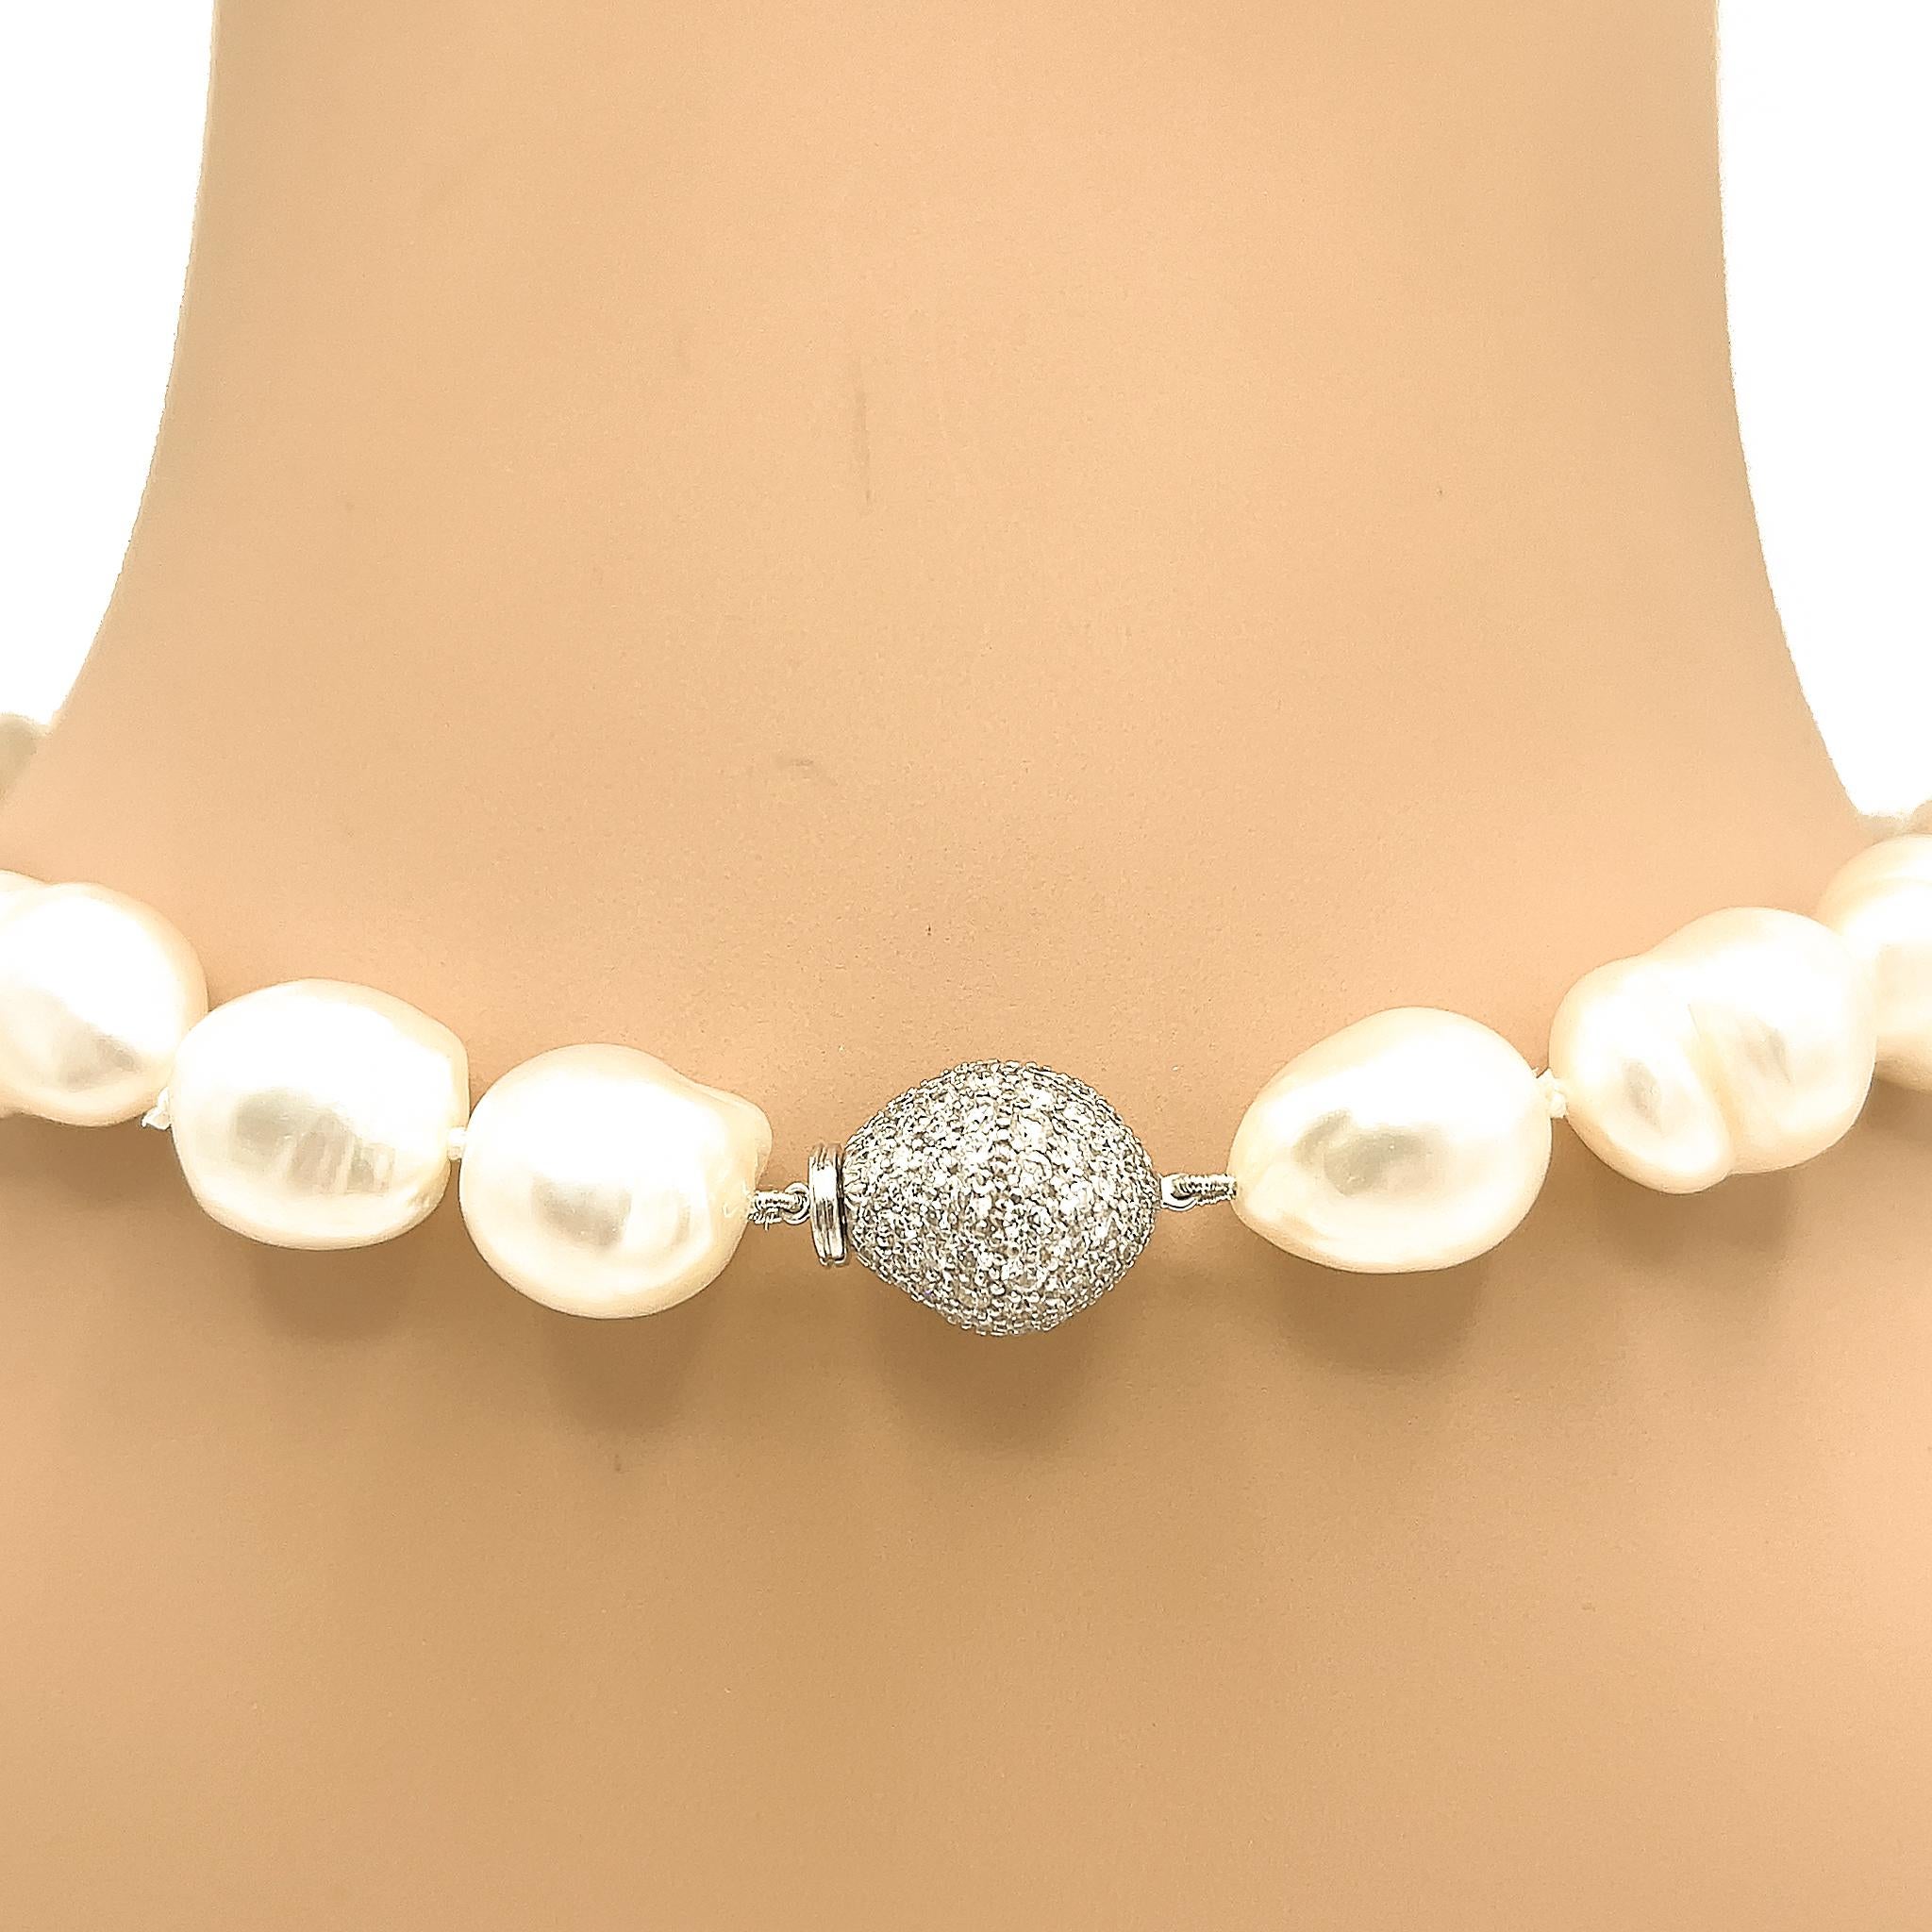 Barocke Perlen: 12-15 mm
Diamant-Schließe: 3 ct twd
Länge: 18 Zoll